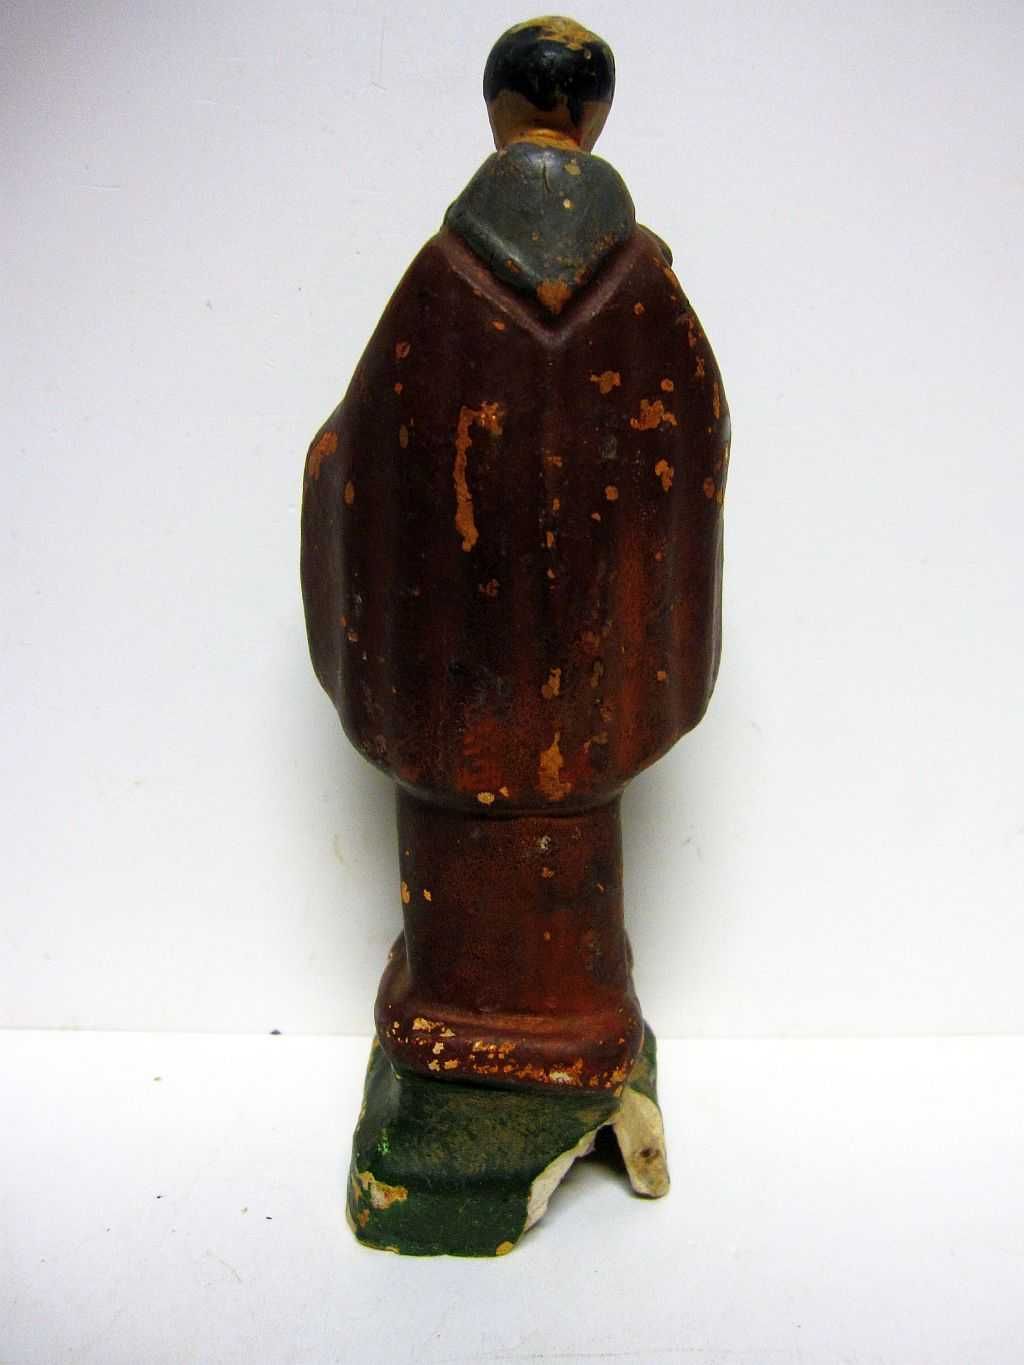 pequenas antigas figuras de Santos em cerâmica policromada